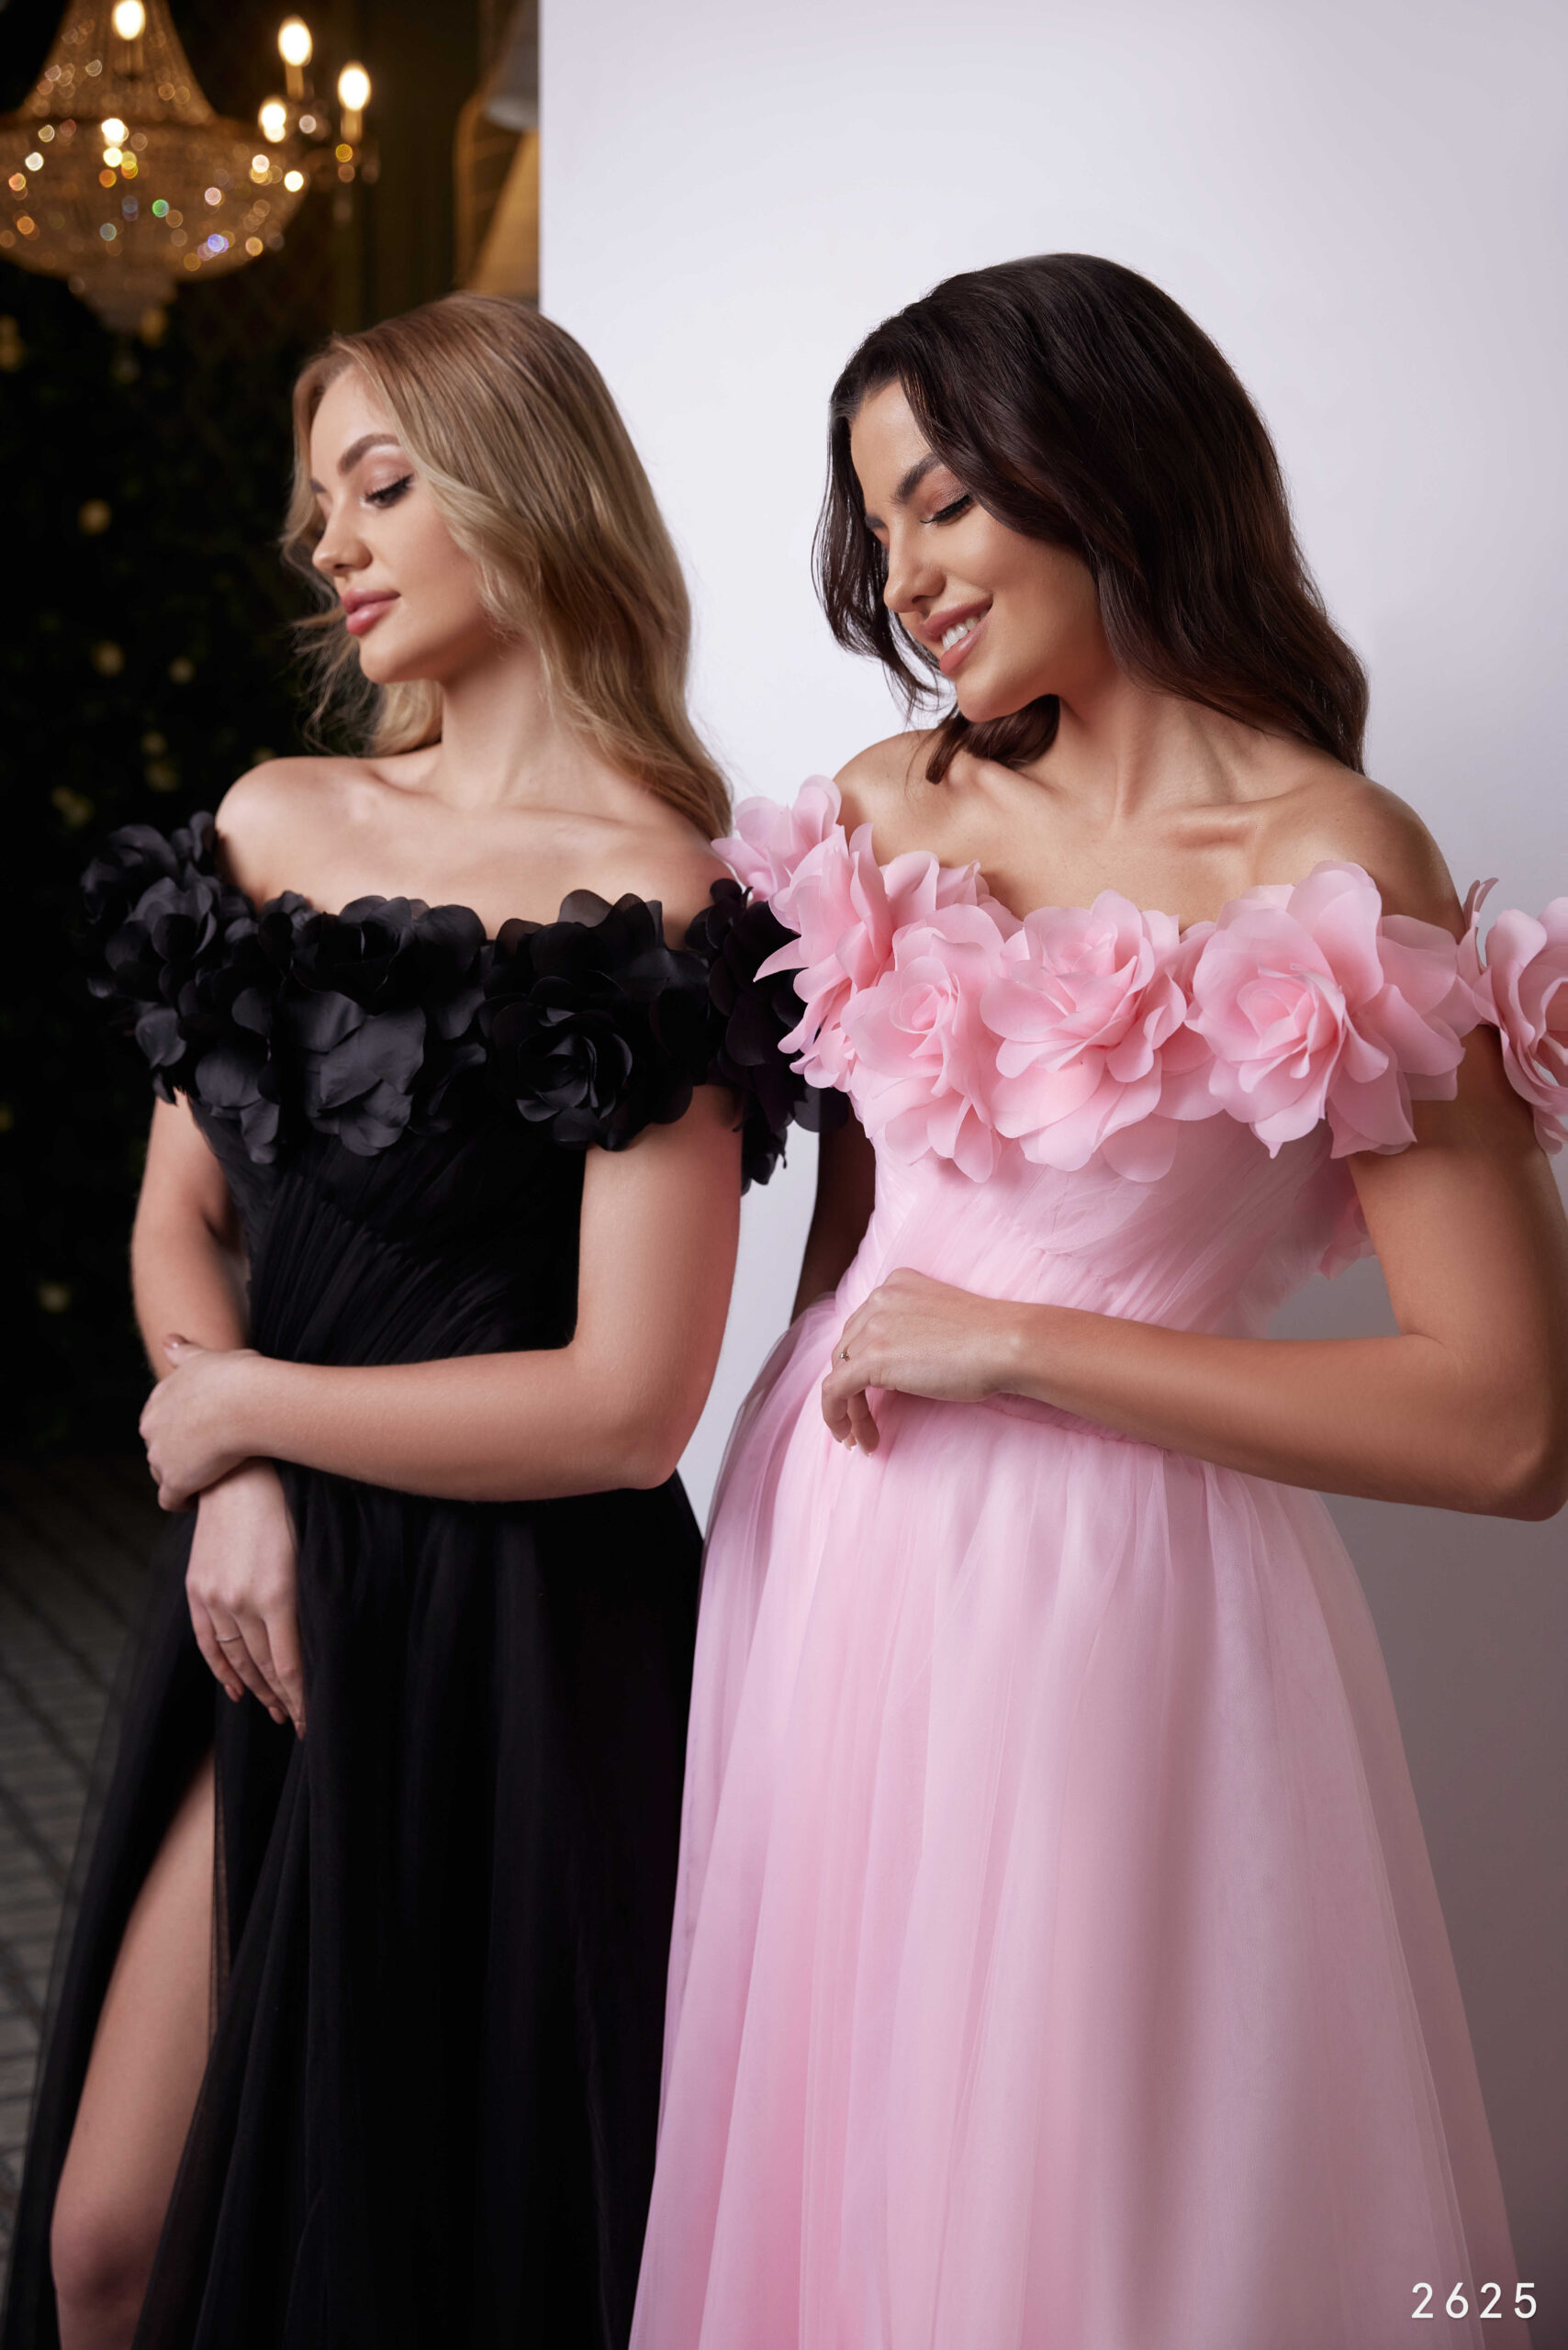 Originální růžové korzetové společenské nebo plesové šaty s rozparkem na sukni s 3D květy. Salon Hanna Valašské Klobouky Zlín